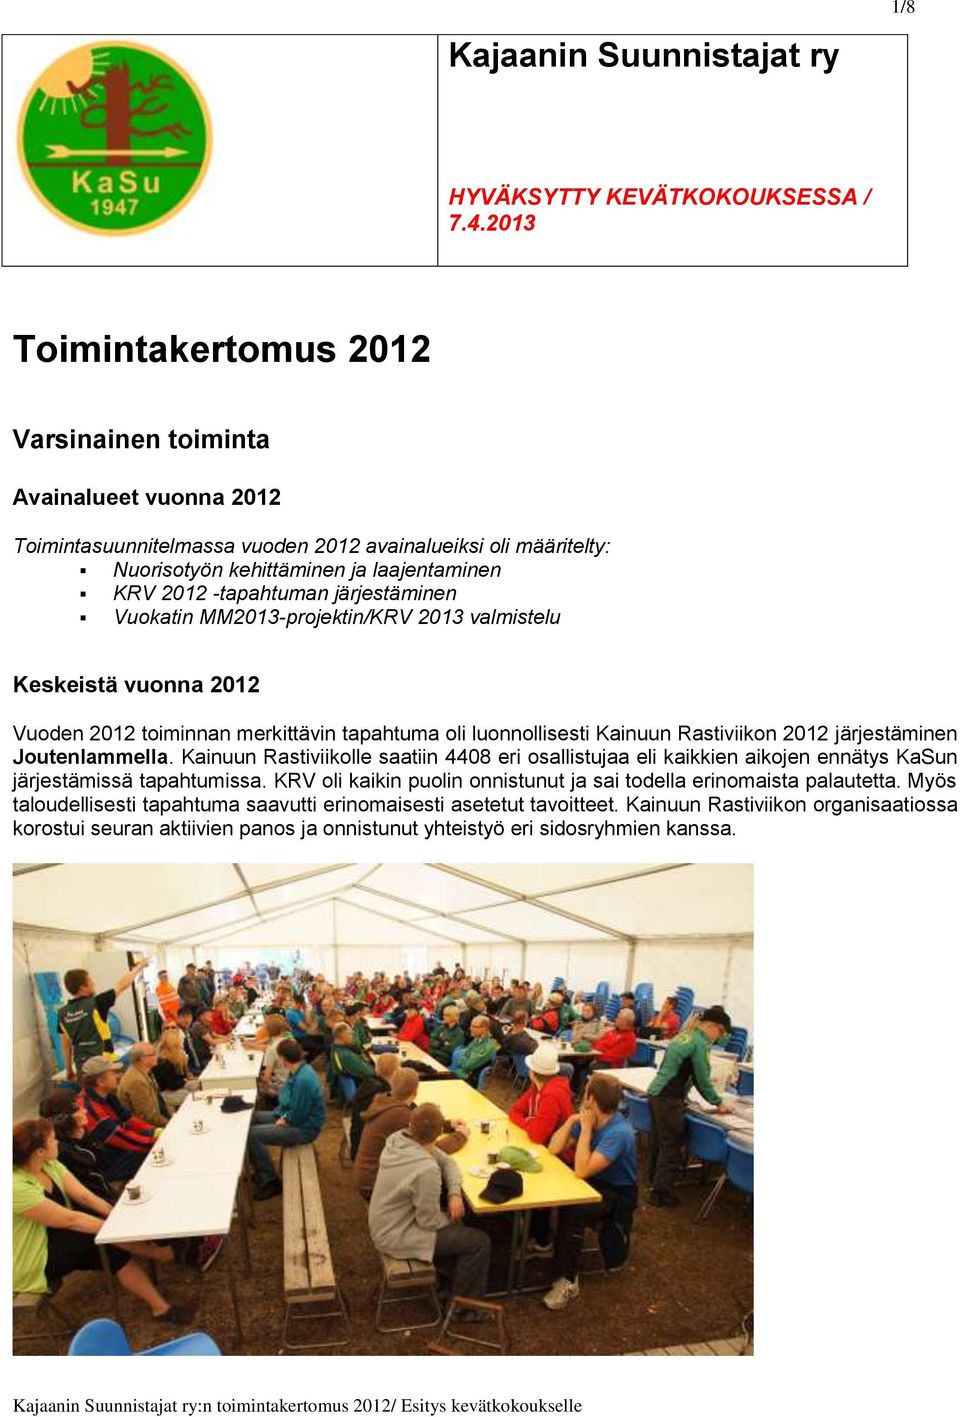 järjestäminen Vuokatin MM2013-projektin/KRV 2013 valmistelu Keskeistä vuonna 2012 Vuoden 2012 toiminnan merkittävin tapahtuma oli luonnollisesti Kainuun Rastiviikon 2012 järjestäminen Joutenlammella.